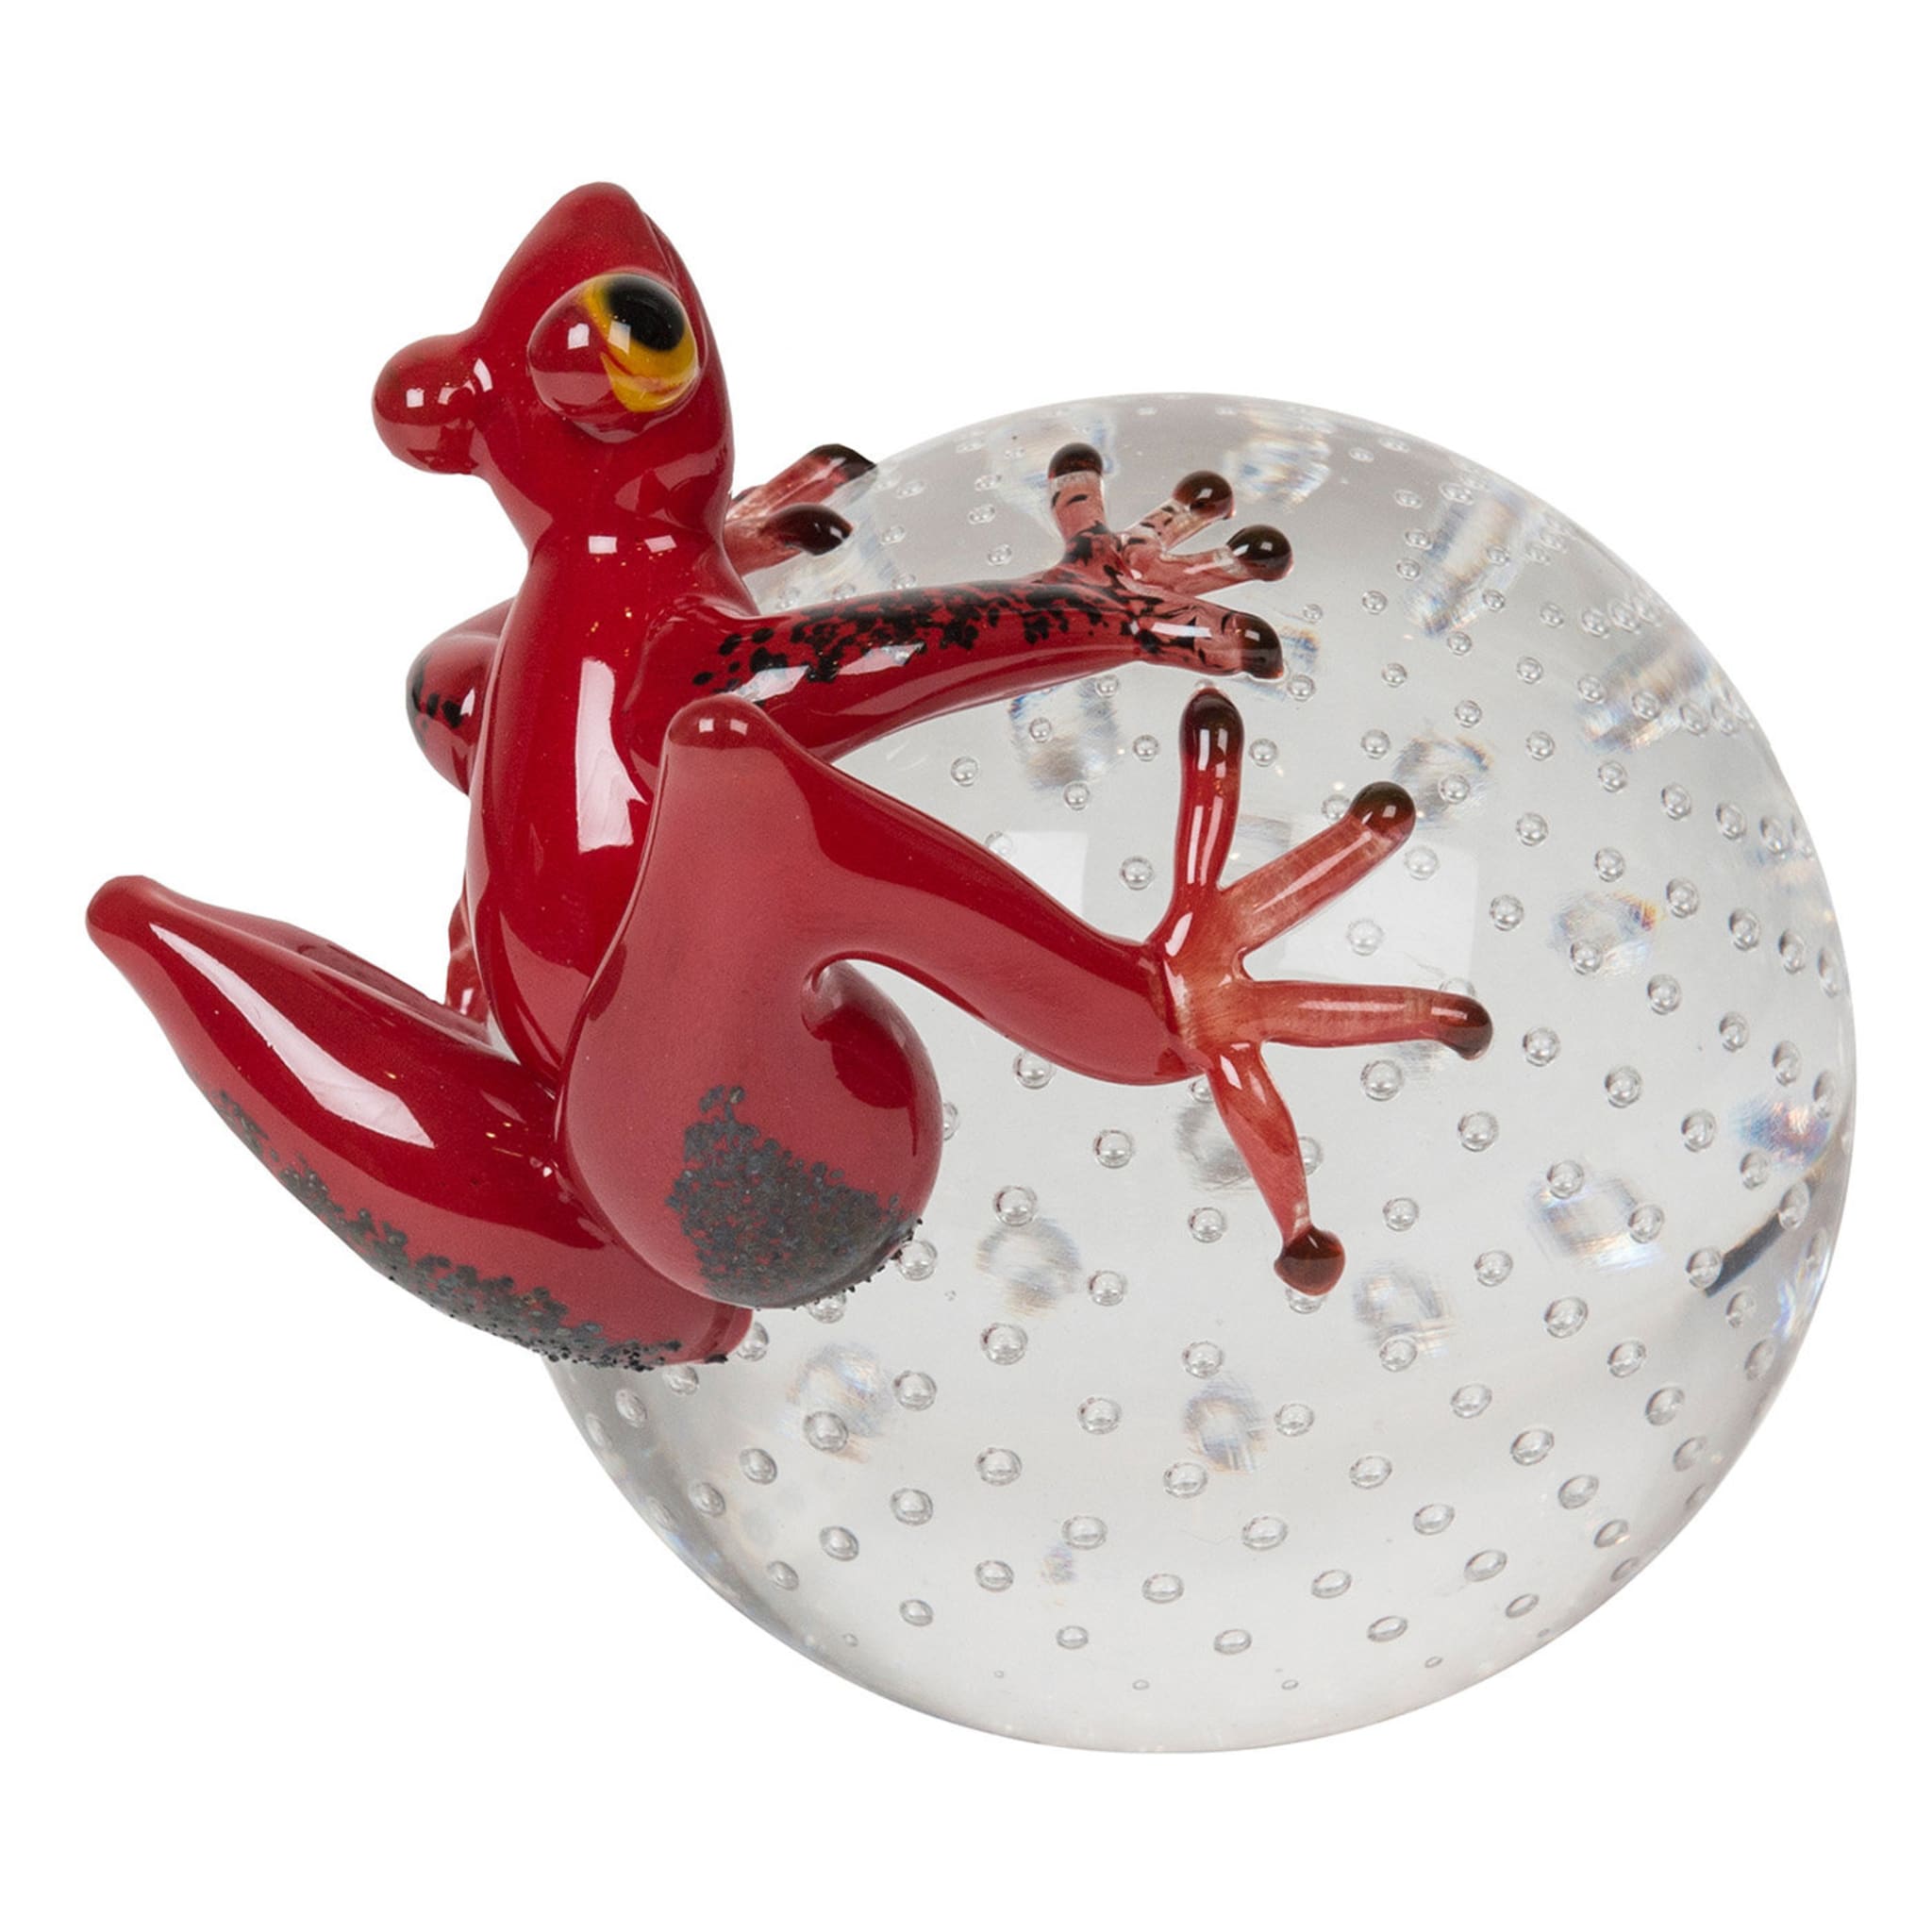 Rana de cristal roja sobre esfera - Vista principal